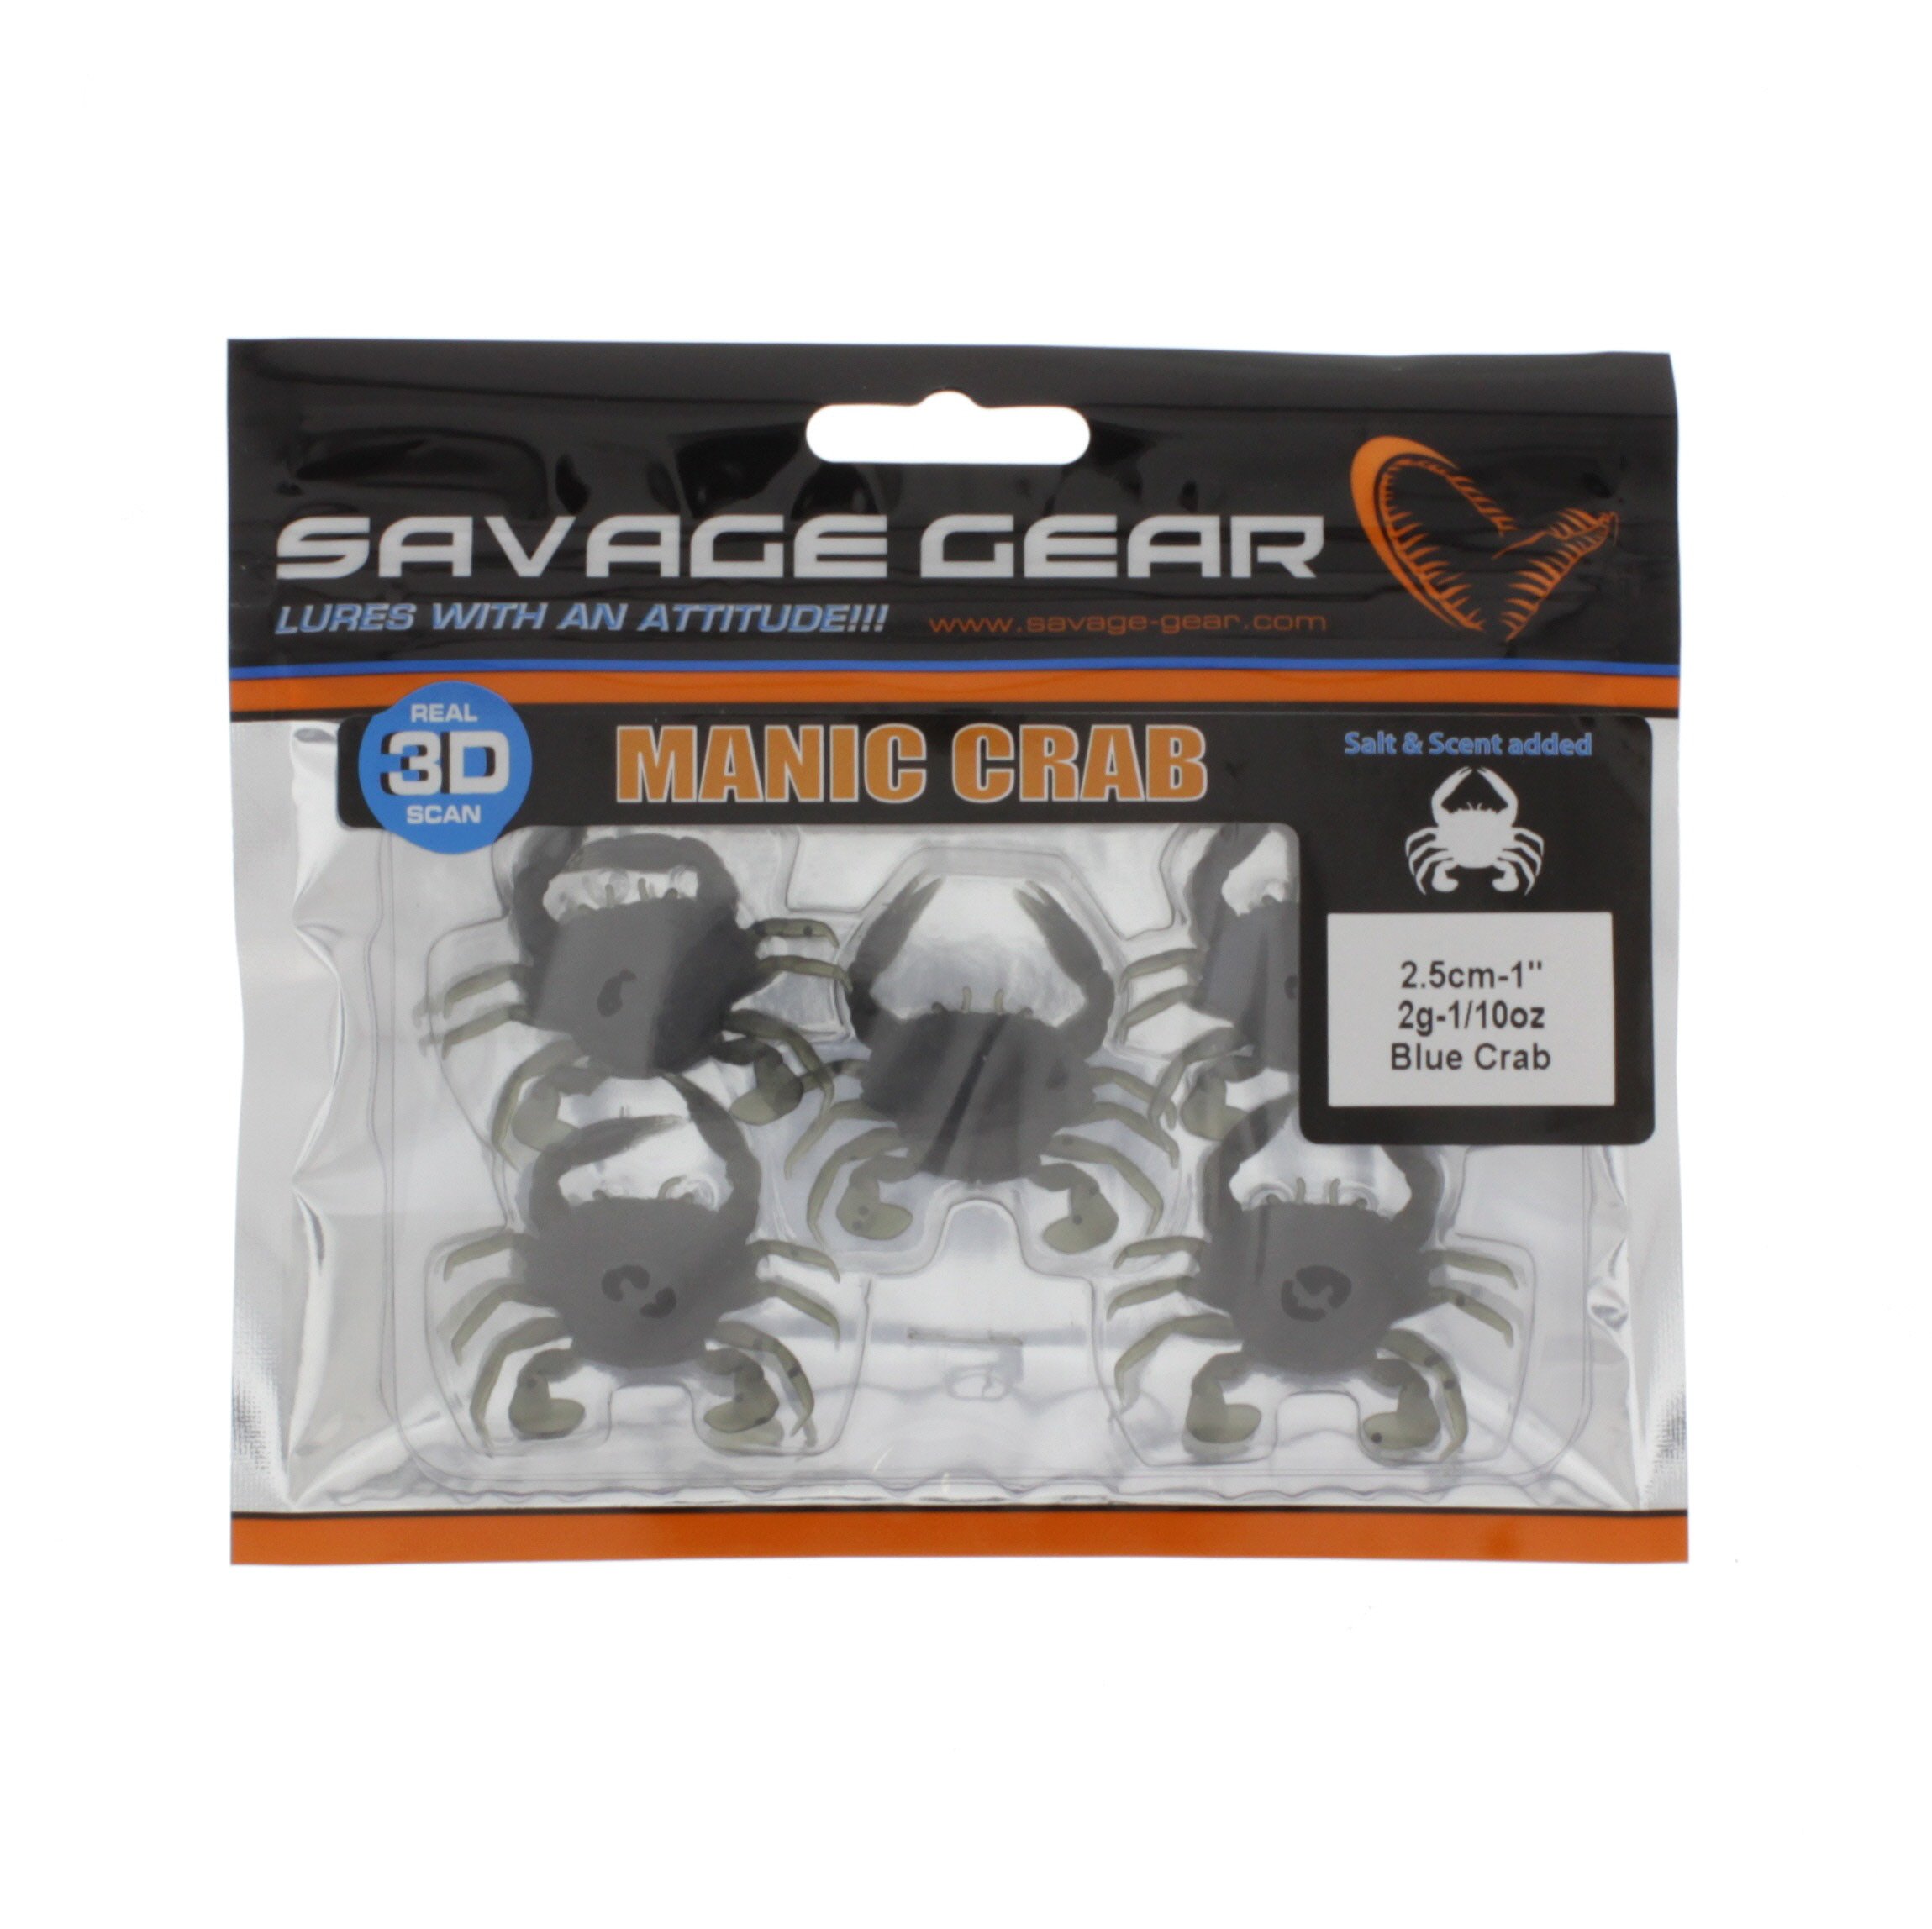 Savage Gear LB 3D Manic Crab Red & Black Creature Bait Gummifisch Gummikrebs 